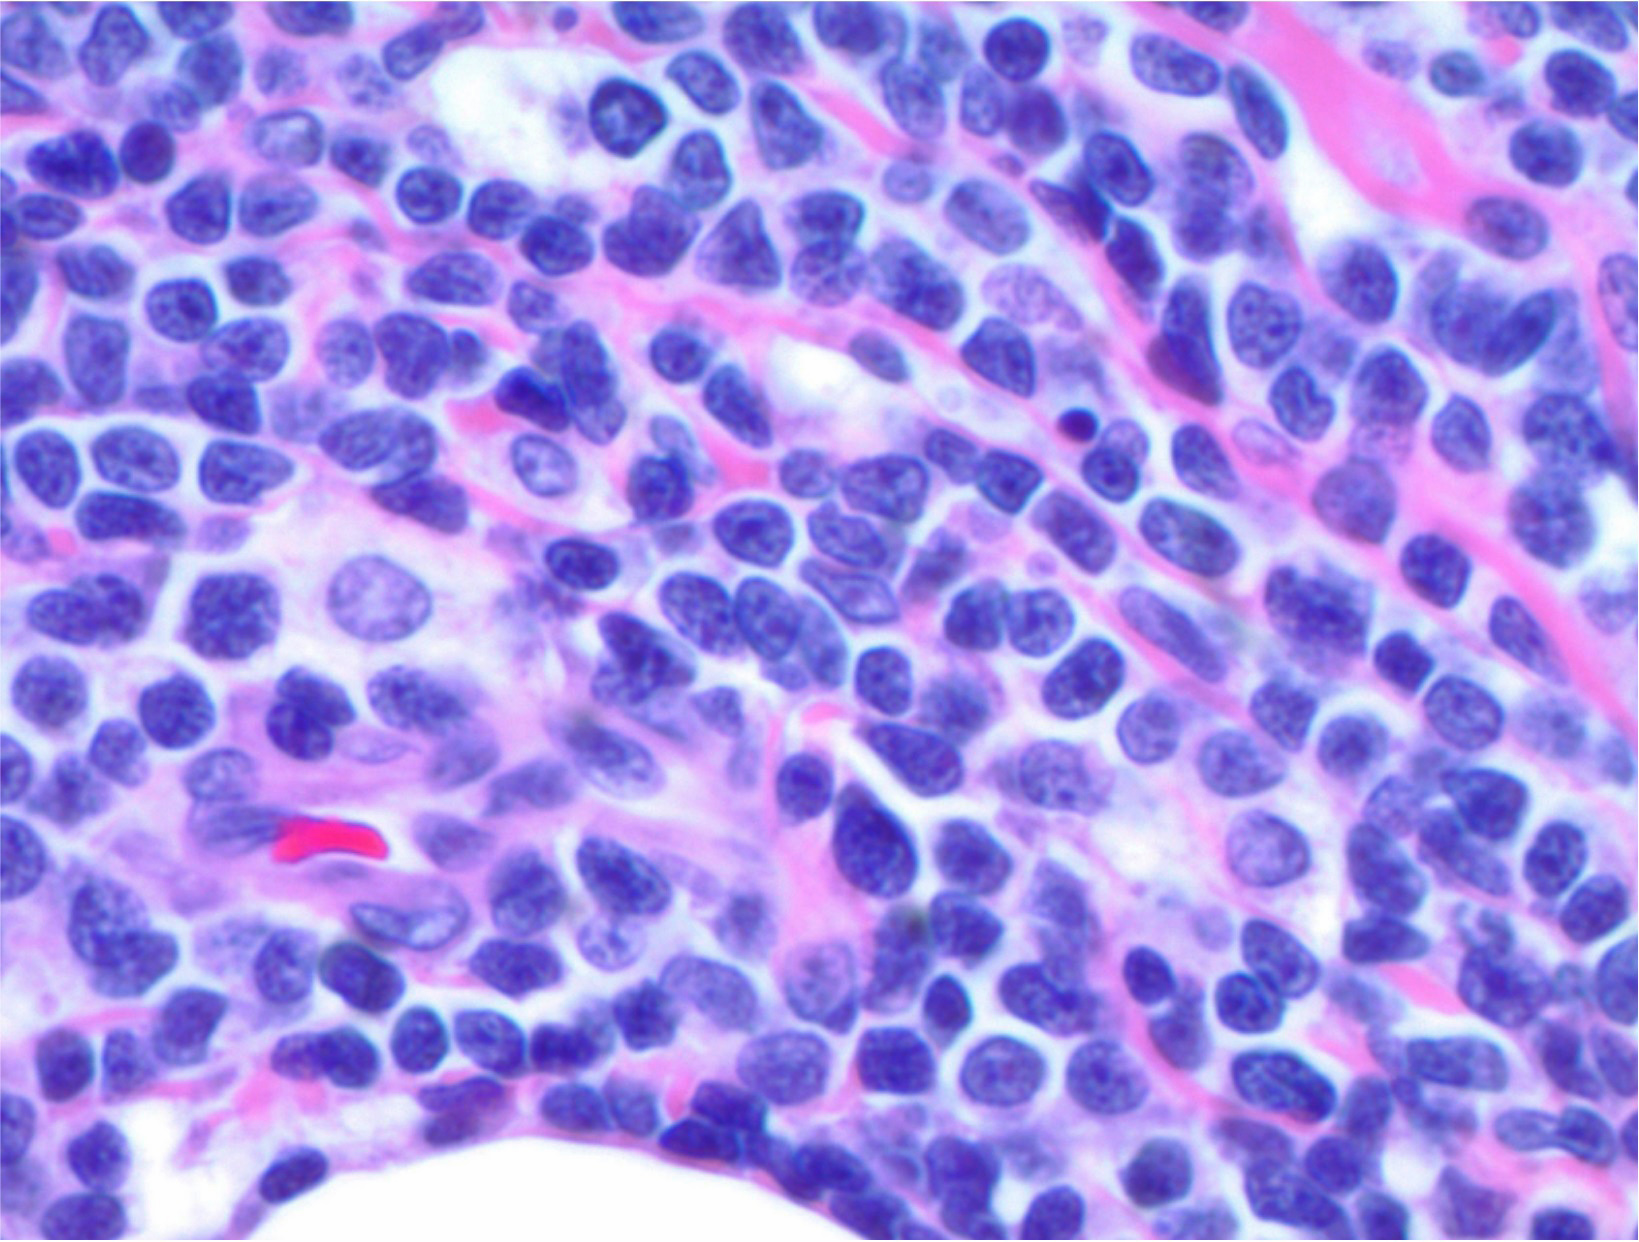 T lymphoblastic lymphoma